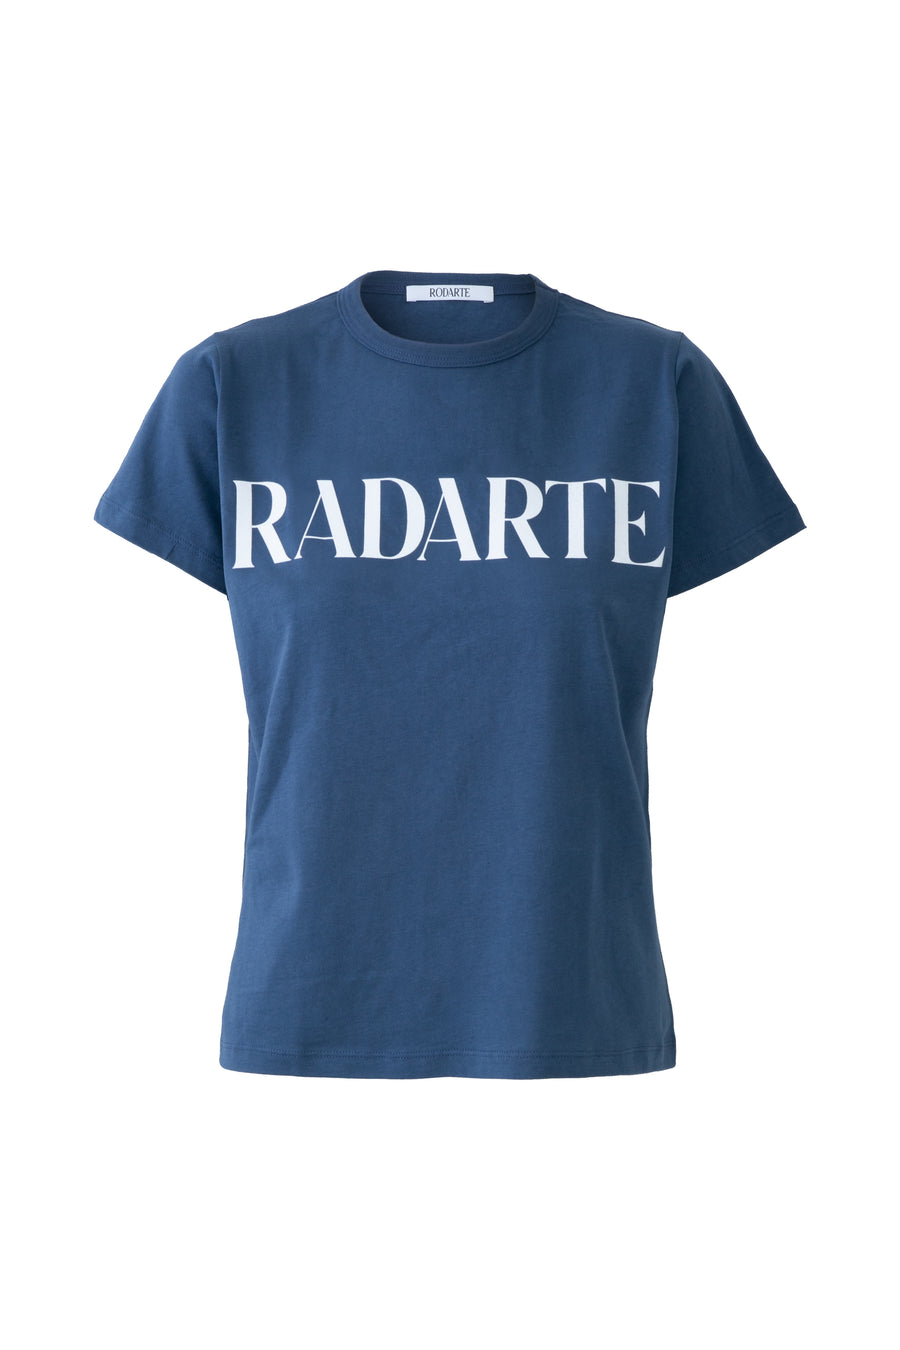 Denim Blue Radarte T-Shirt